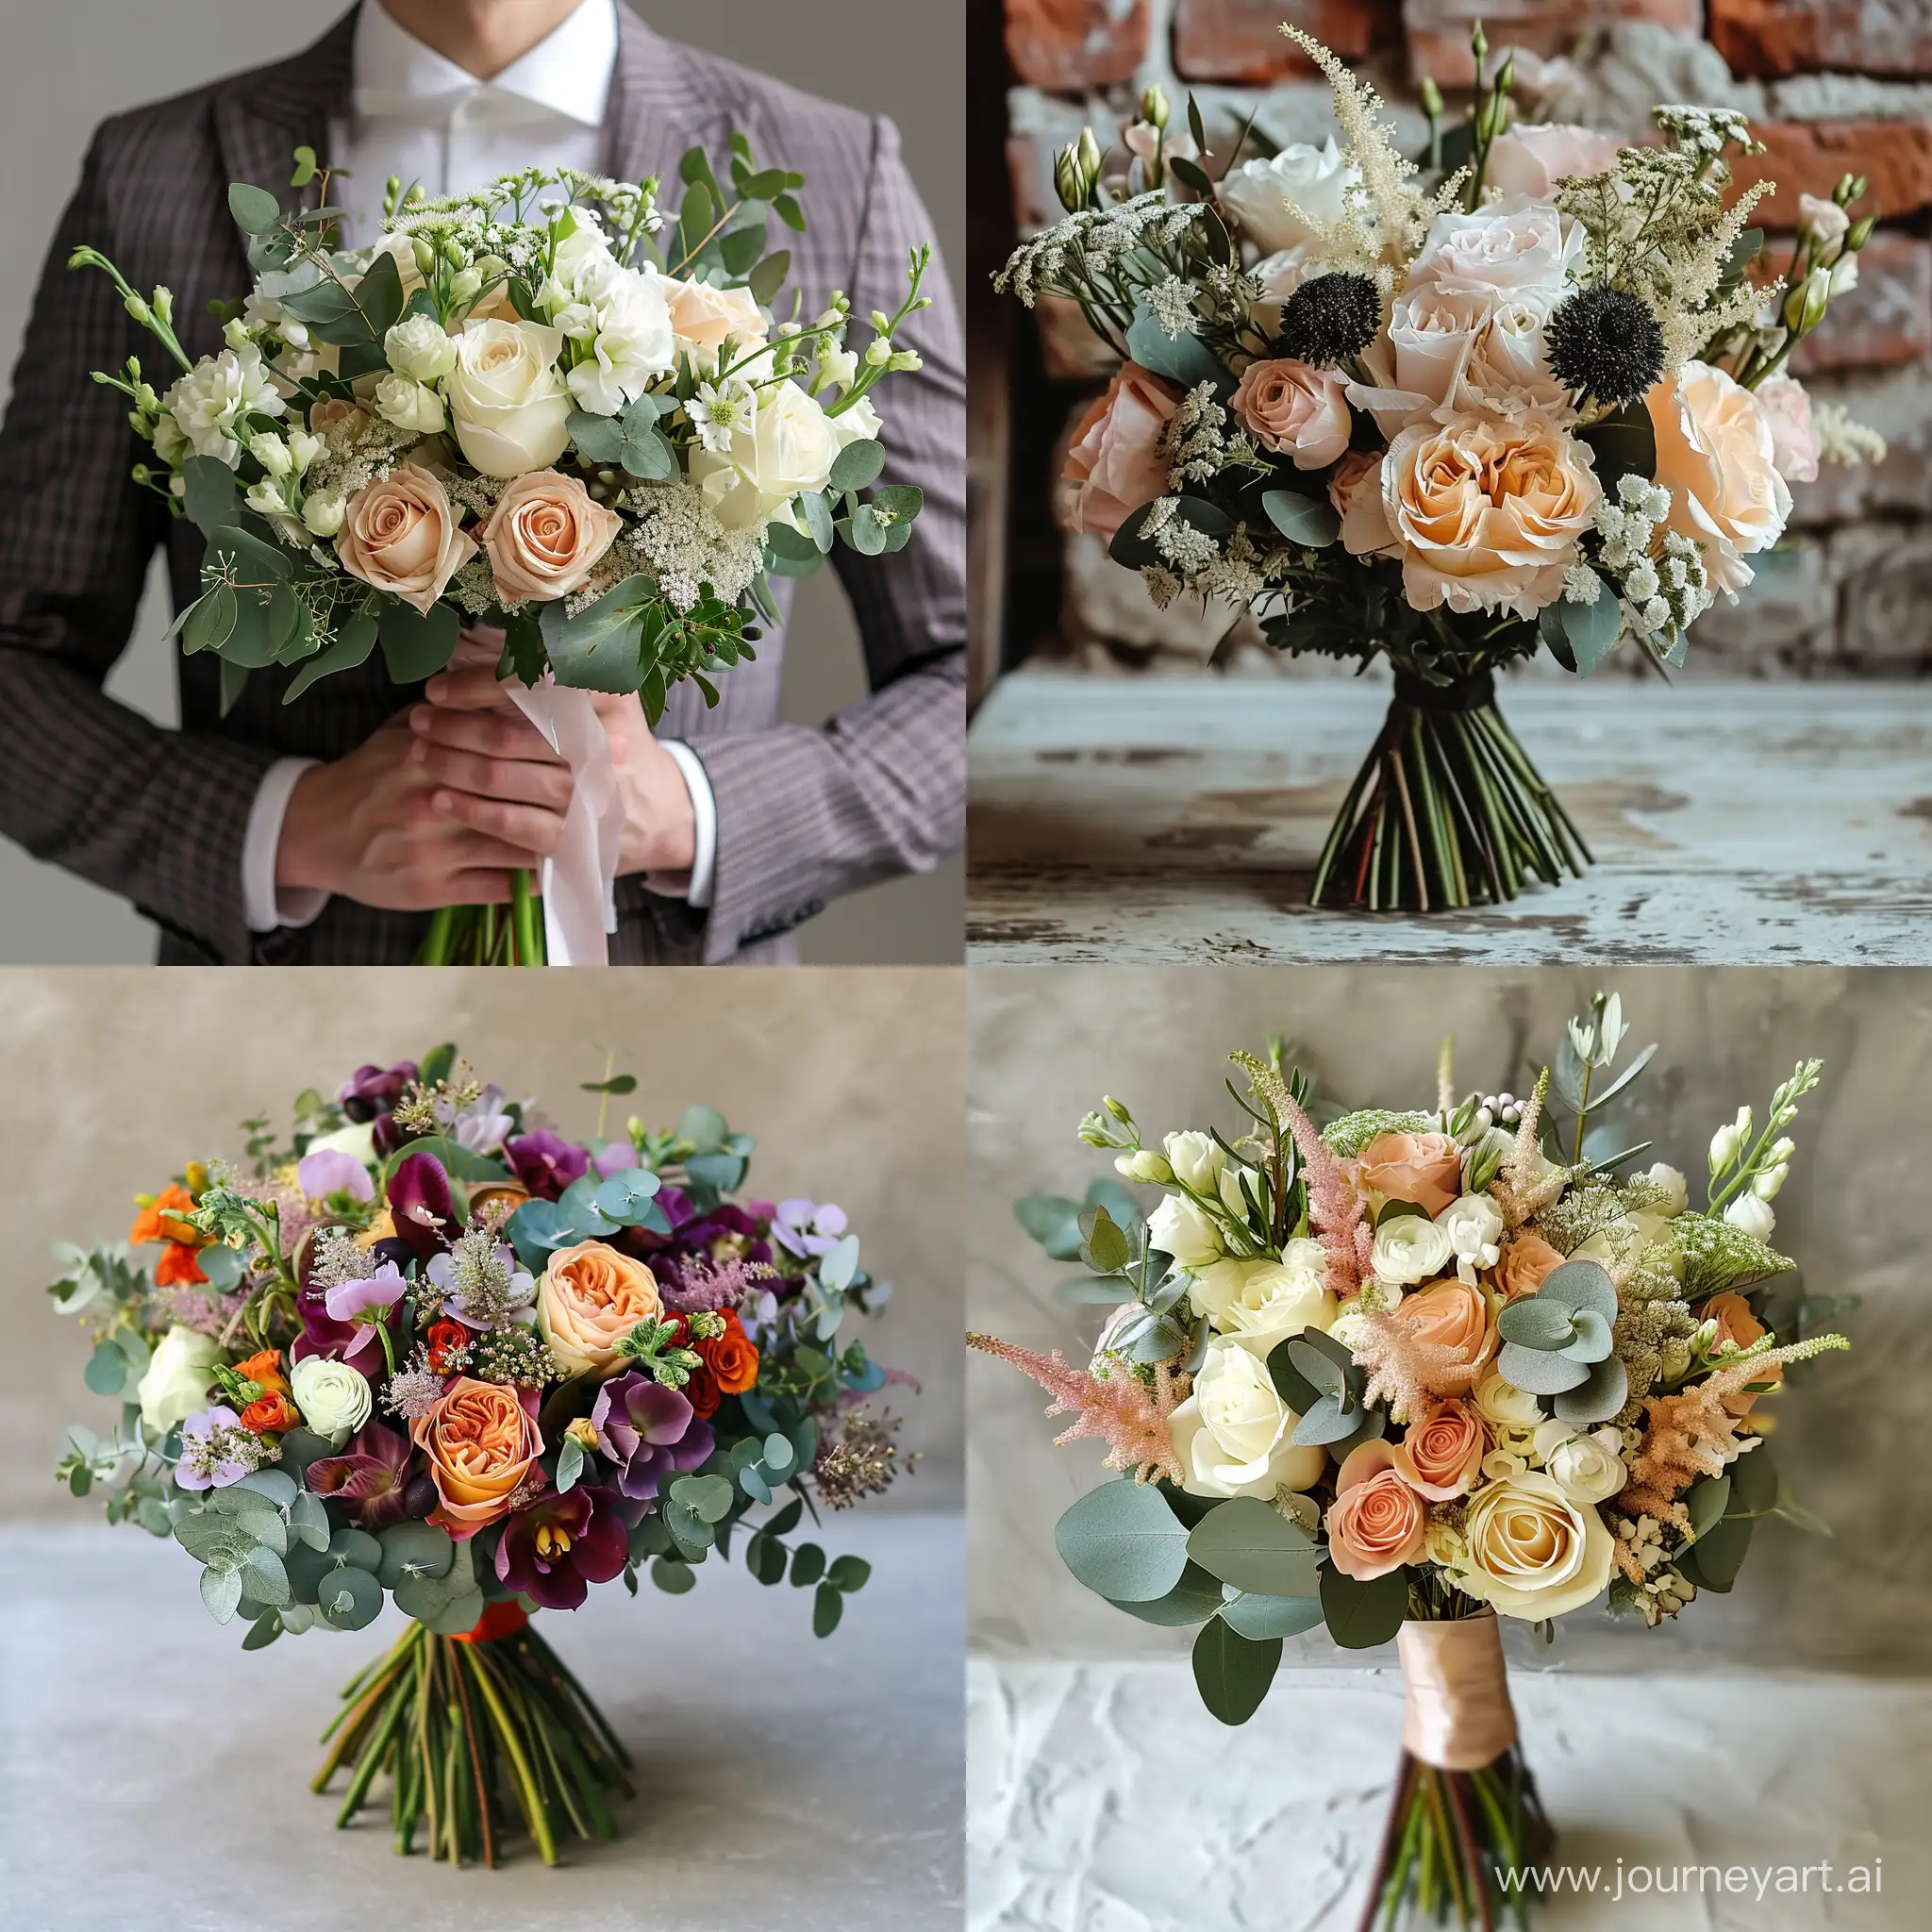 Stylish-Masculine-Bouquet-Arrangement-with-Vibrant-Colors